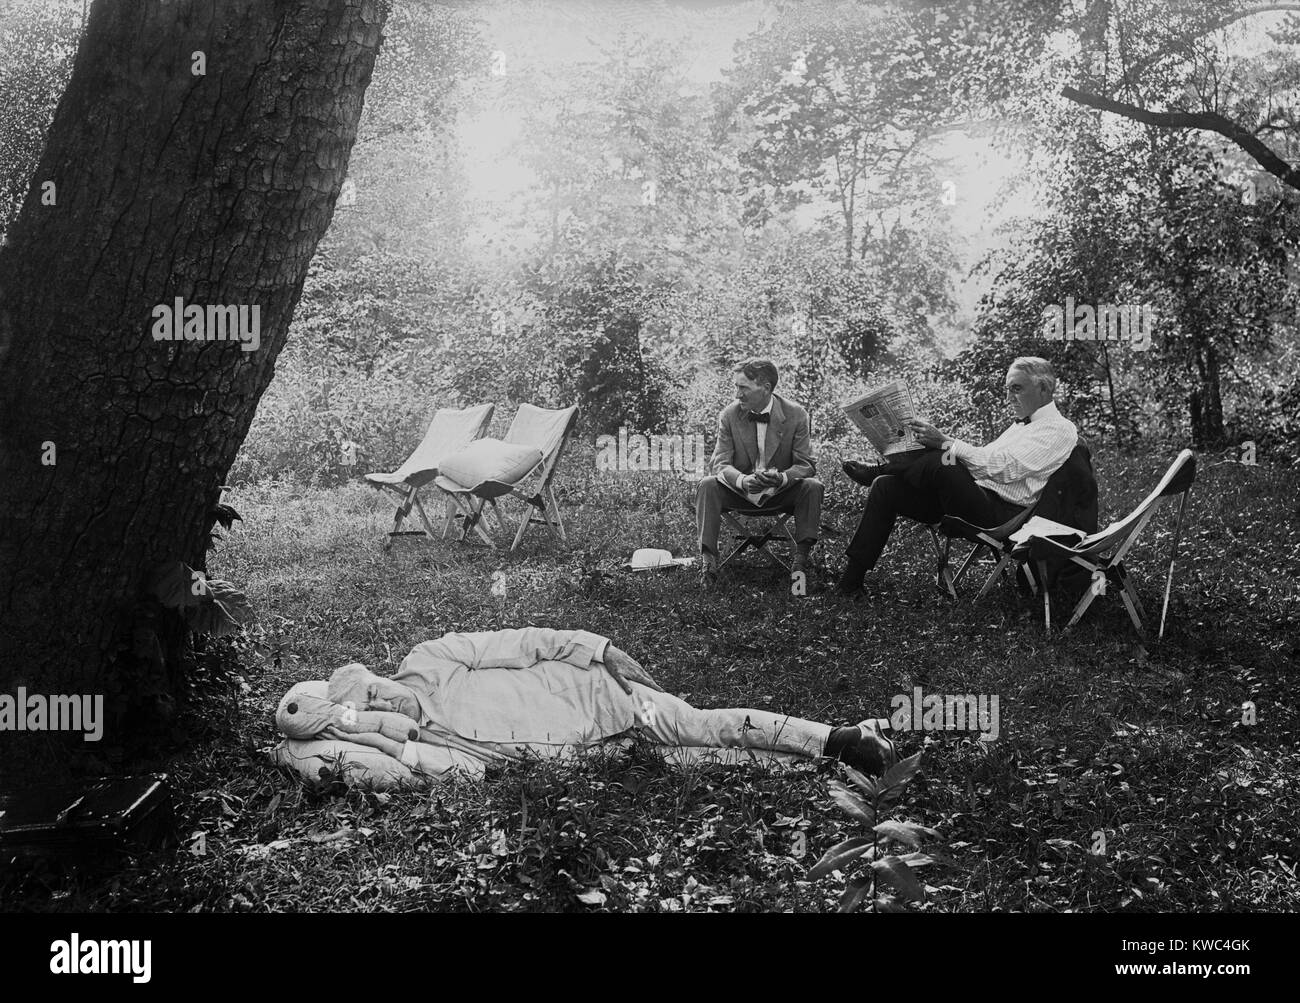 Thomas Edison nap unter einem Baum, am 19. Juli 1921. Im Hintergrund der Präsident Warren Harding liest eine Zeitung in einem Lager Stuhl neben Harvey Firestone. Maryland. (BSLOC 2015 15 33) Stockfoto